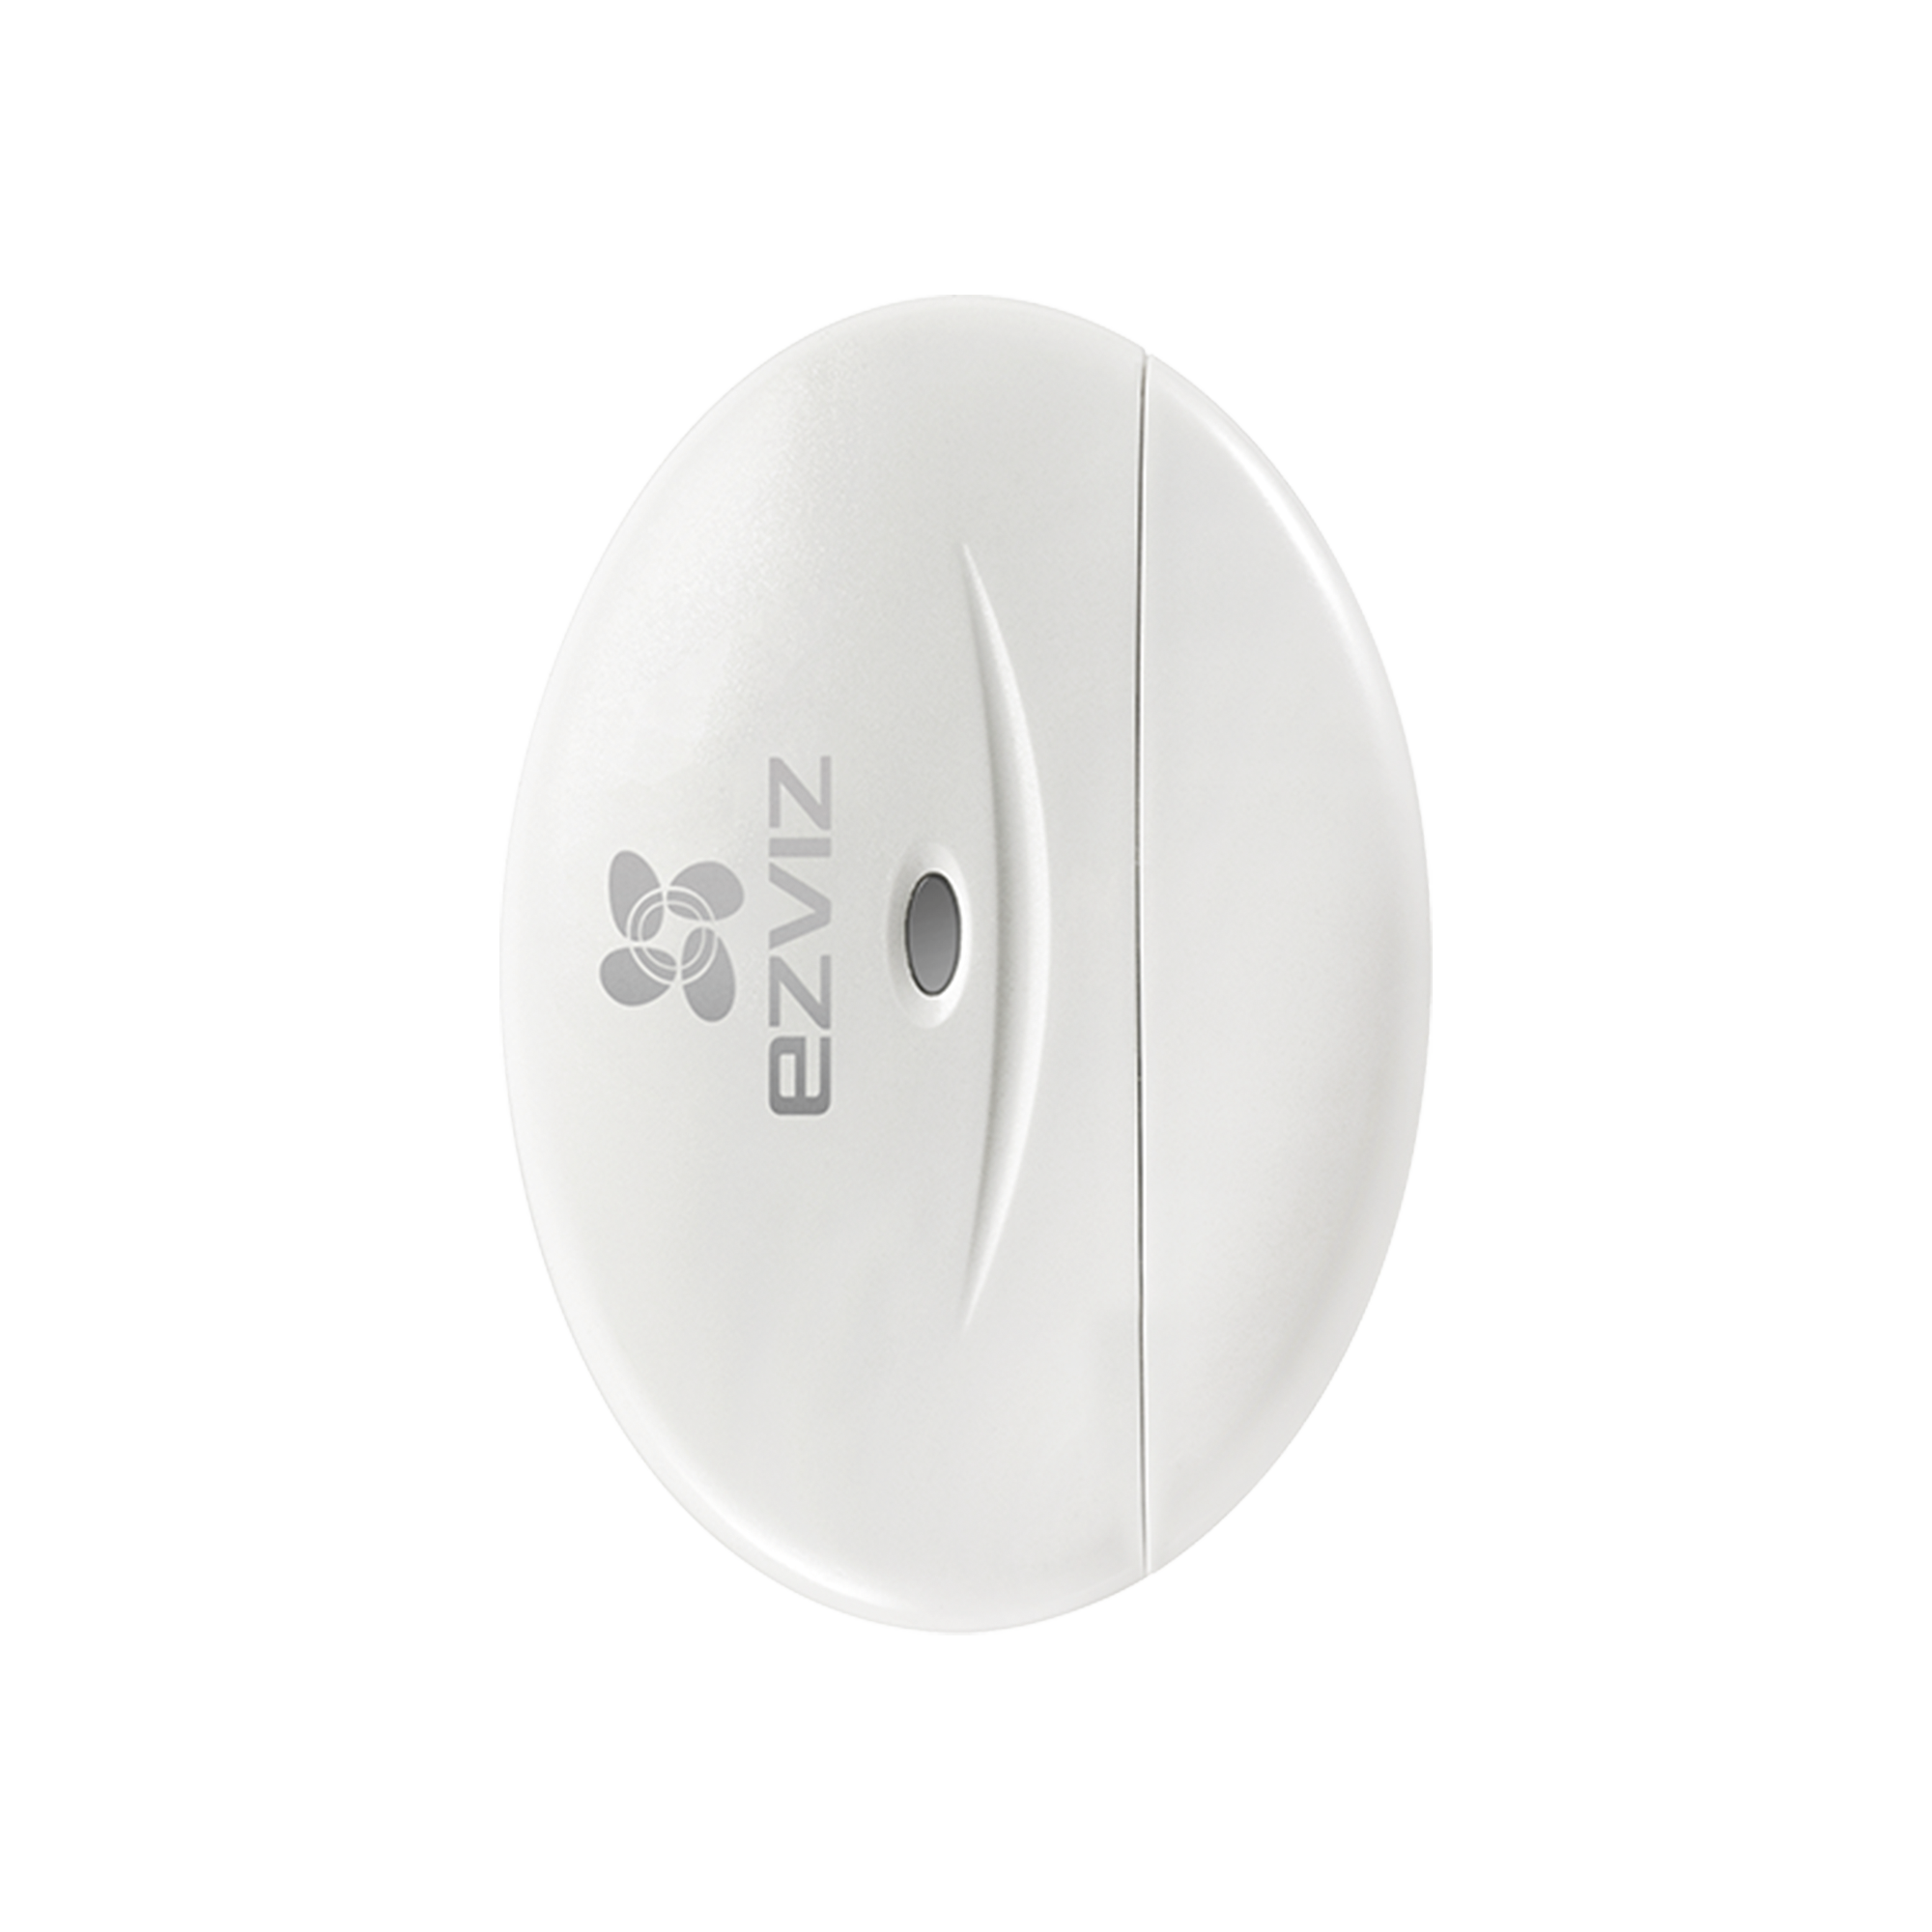 Contacto Magnético Inalambrico / Compatible con Kit de Alarmas EZVIZ / Uso en Interior